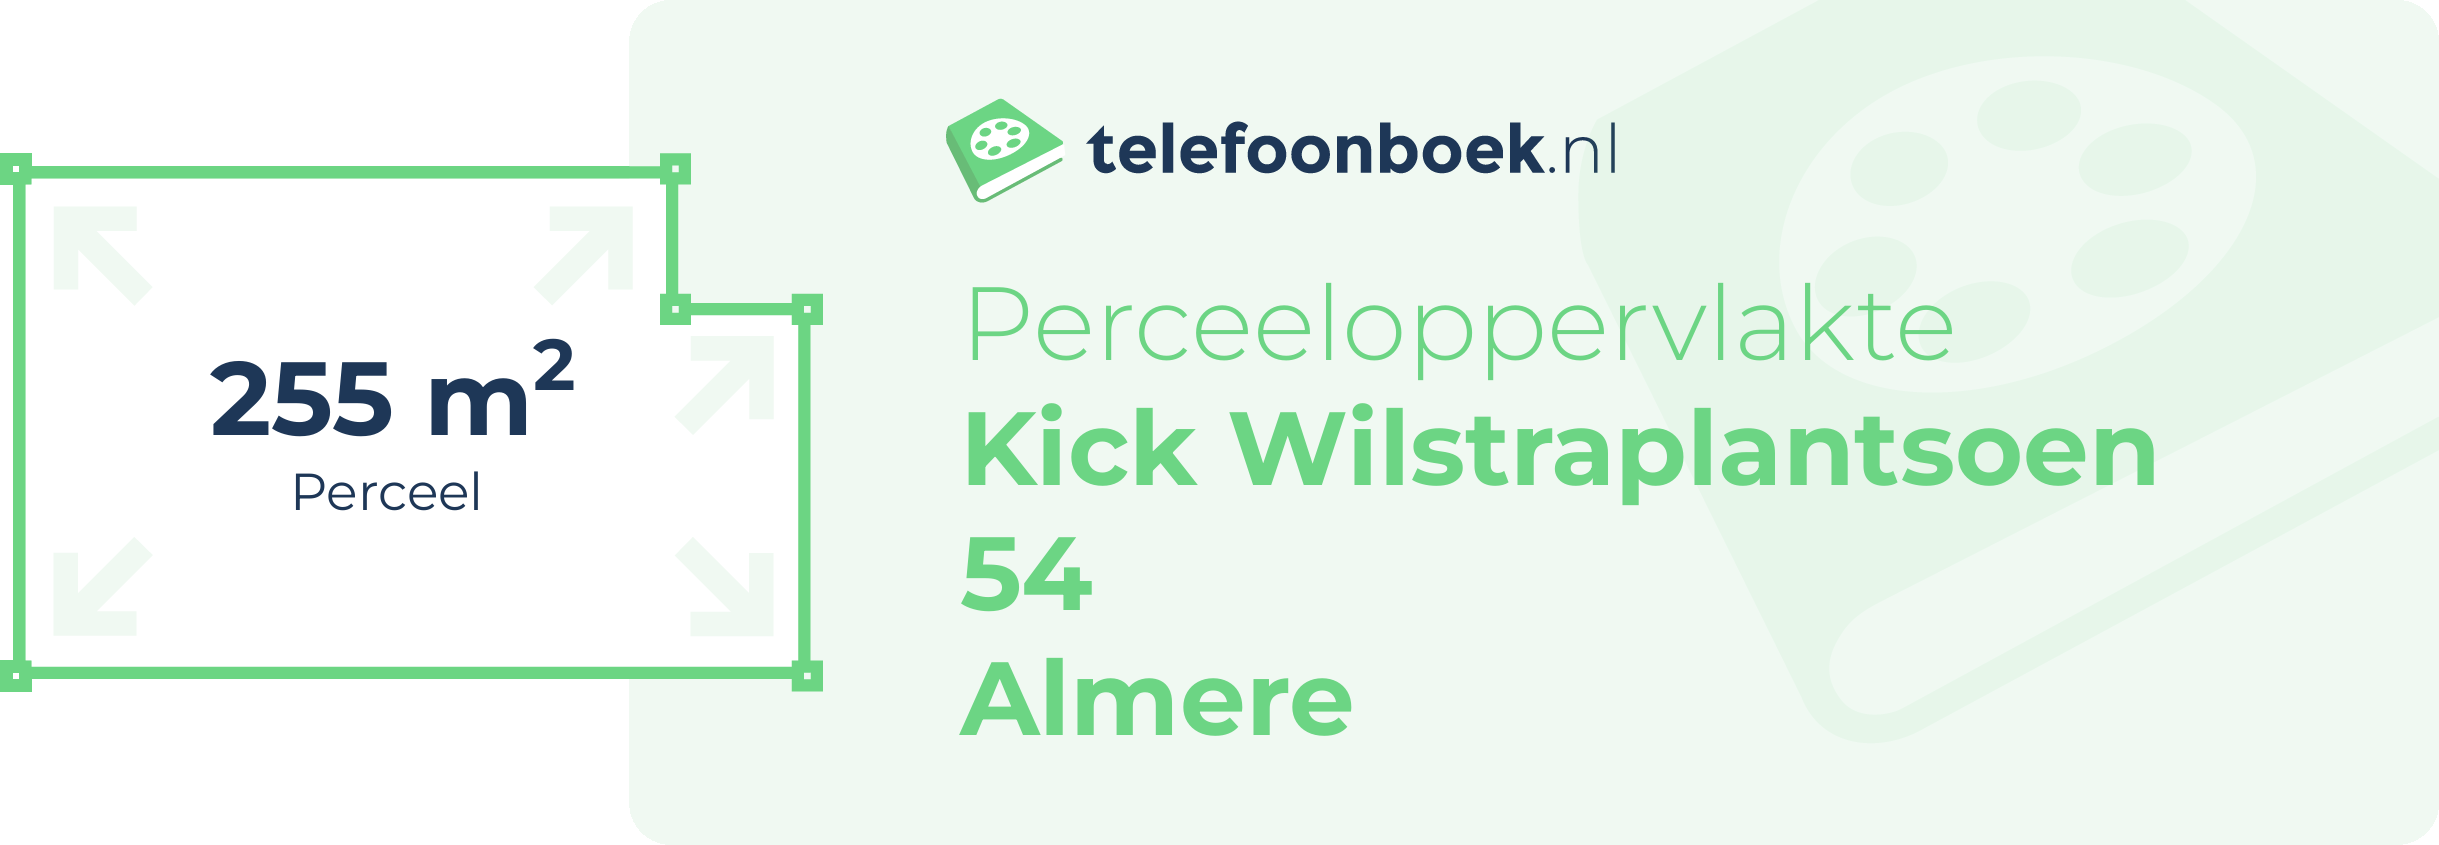 Perceeloppervlakte Kick Wilstraplantsoen 54 Almere